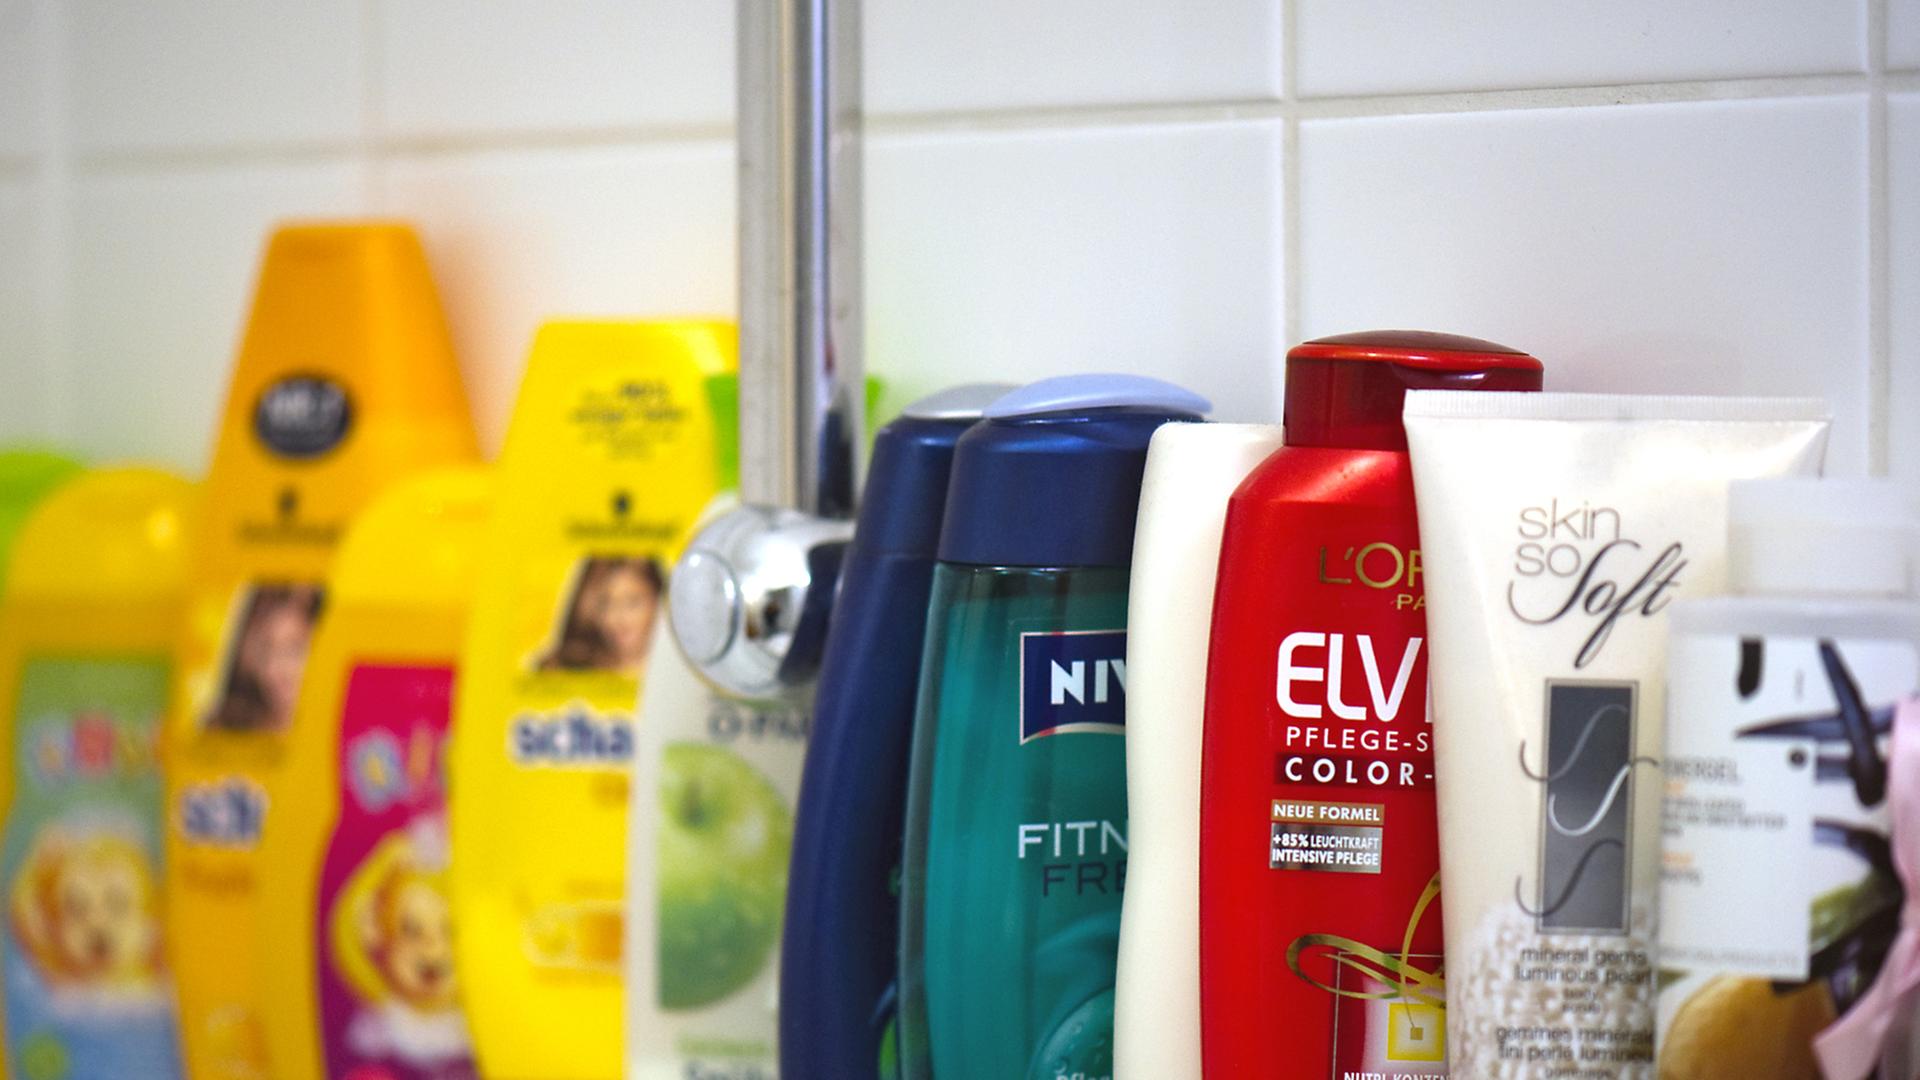 Körperpflege-Produkte stehen in einer Reihe auf einem Badewannenrand